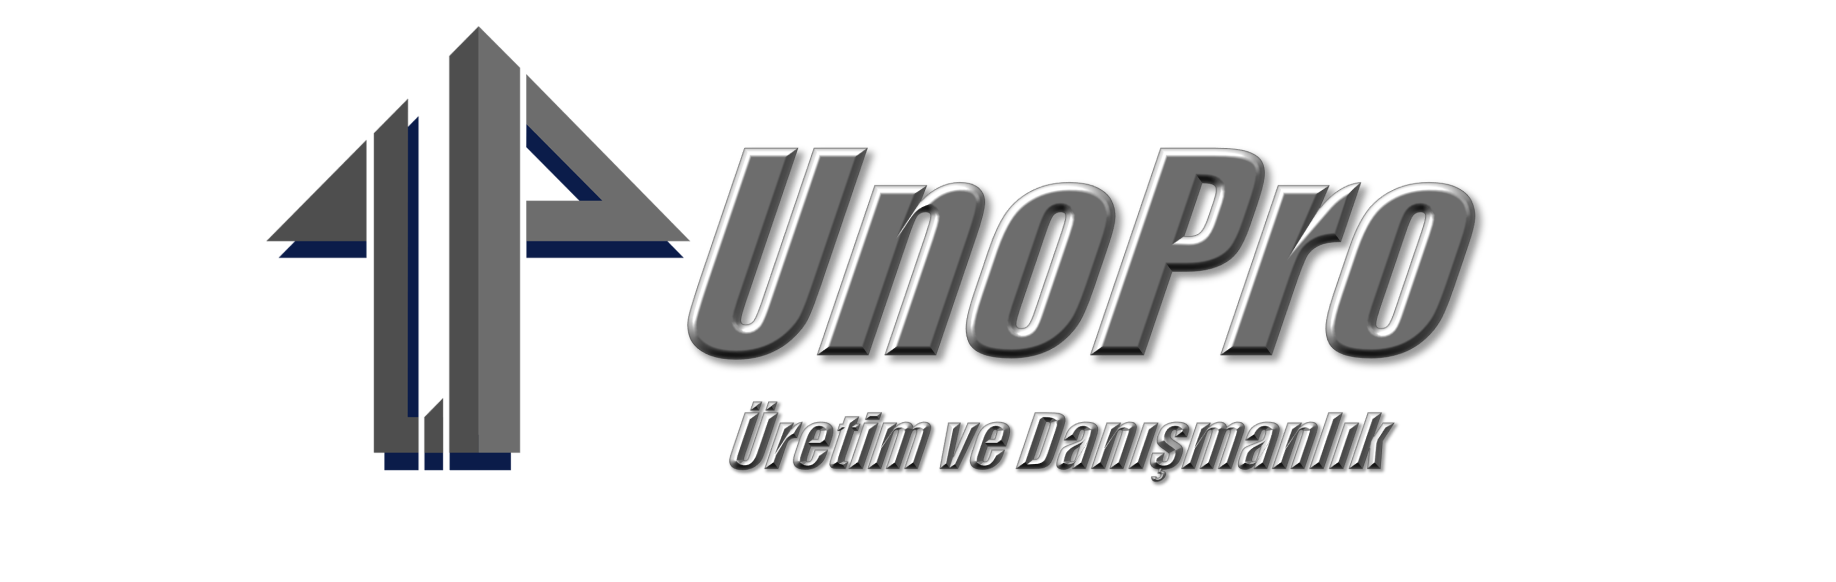 Birleşik Yazılım,UnoPro